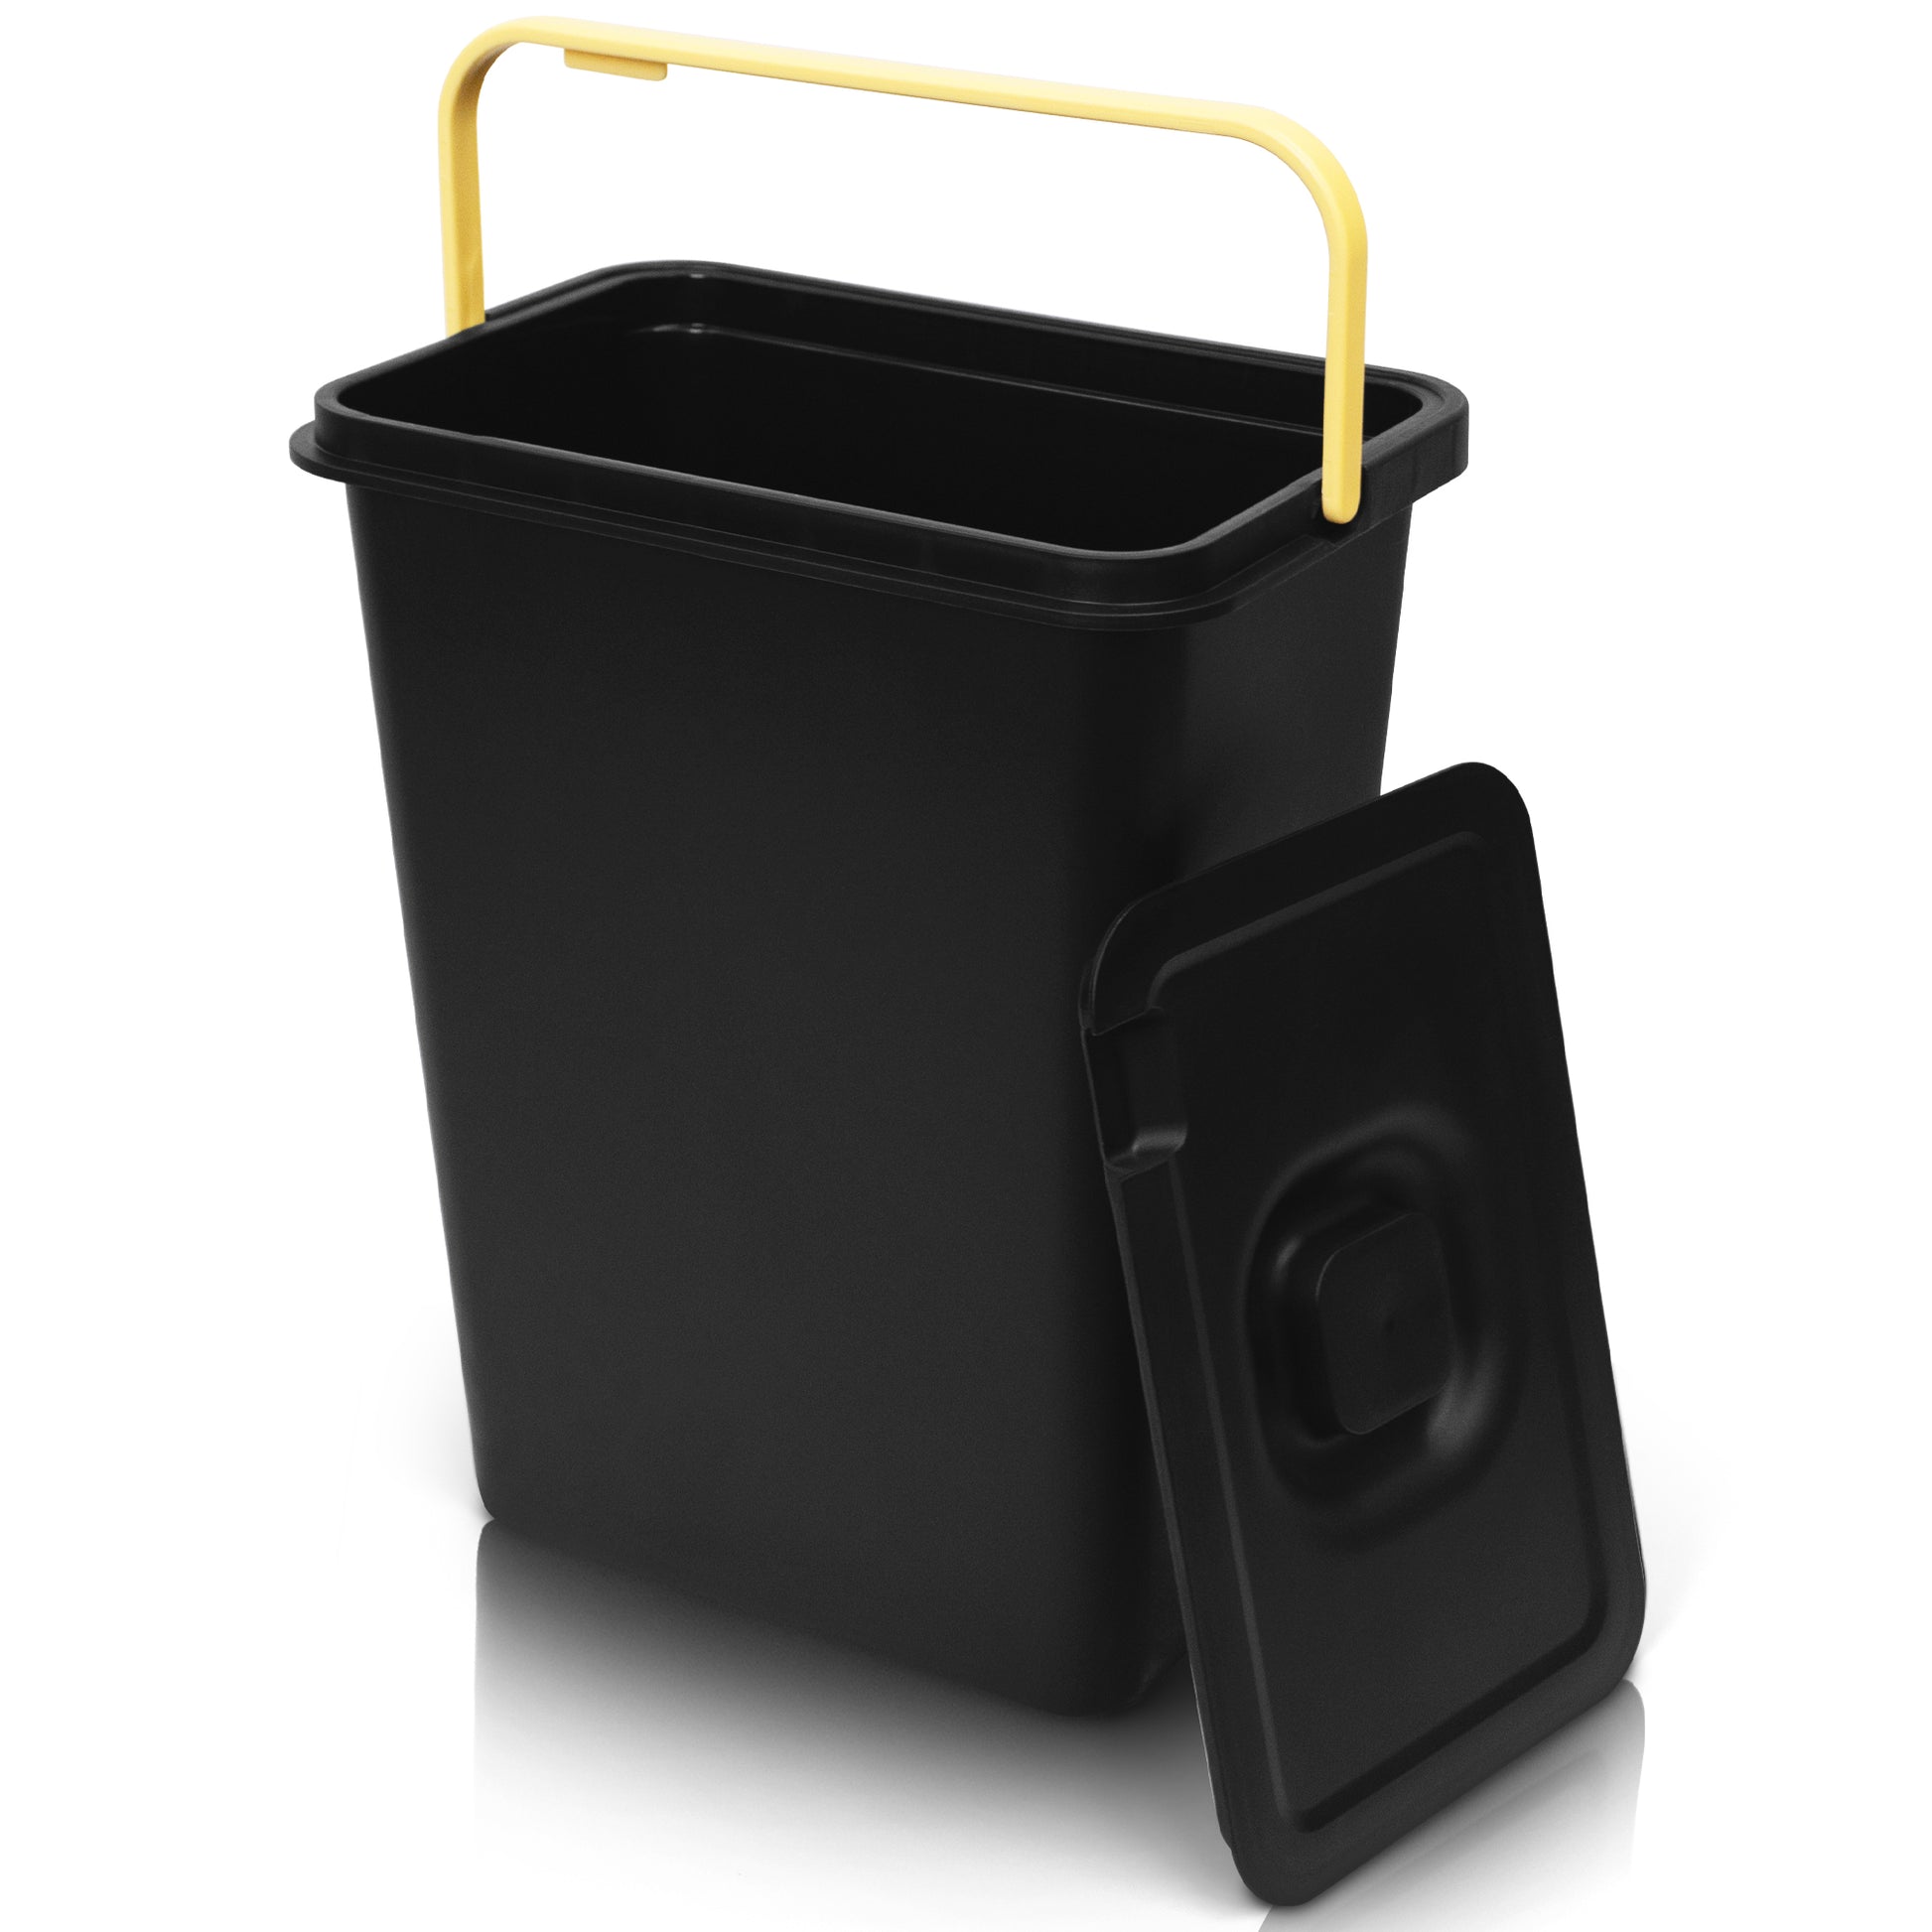 Ein YourCasa® Mülleimer 2-4 Fächer [20-40L] im exklusiven Design – Mülltrennsystem mit Deckel und Fuß mit gelbem Griff zur Mülltrennung.